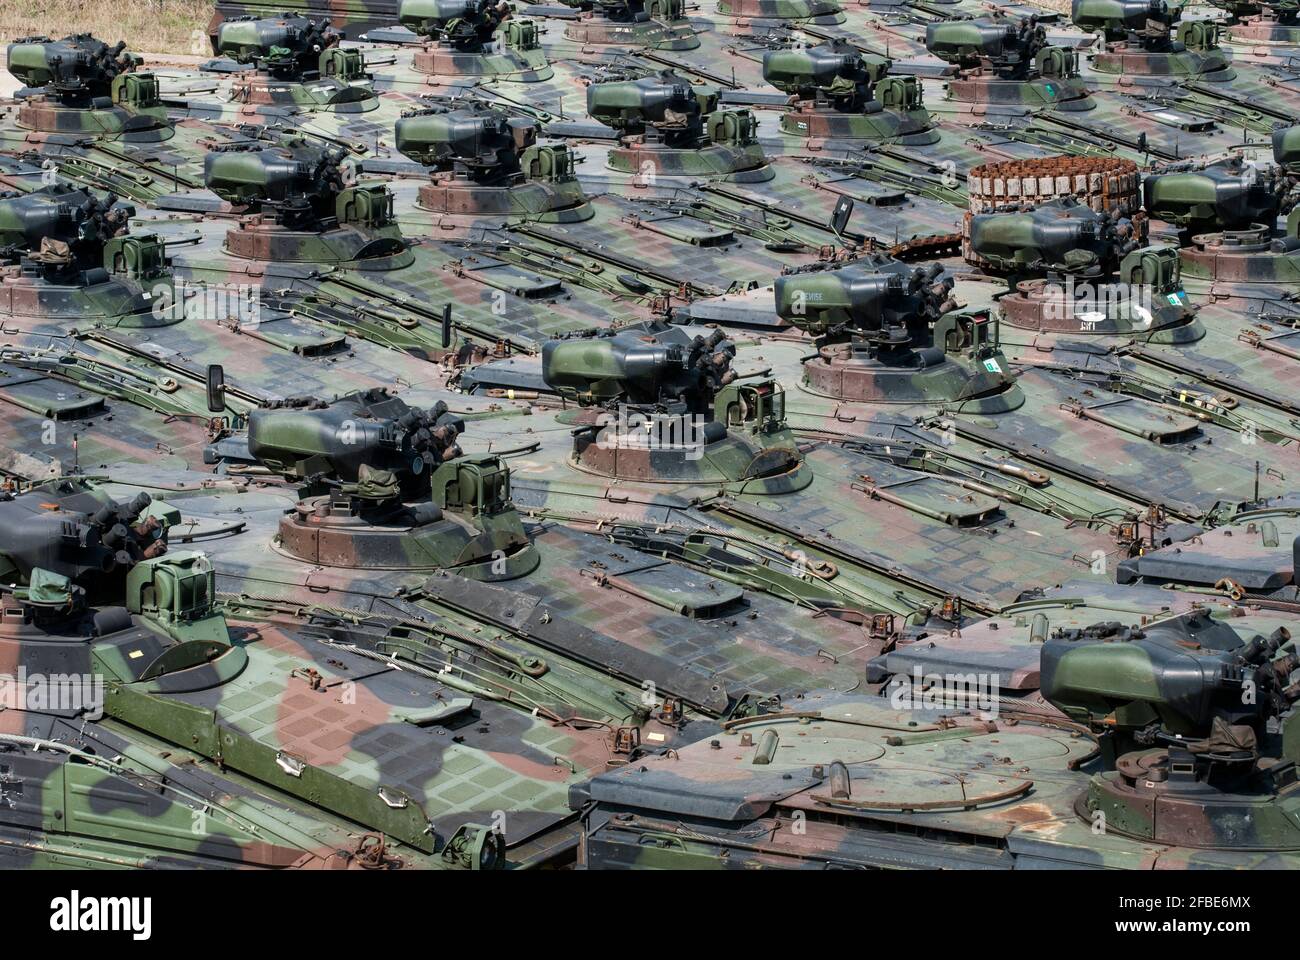 Im 300-Seelen-Dorf Rockensußra befindet sich Europas einzige OTAN-zerifizierte Panzerverschrottungsanlage. Foto de stock